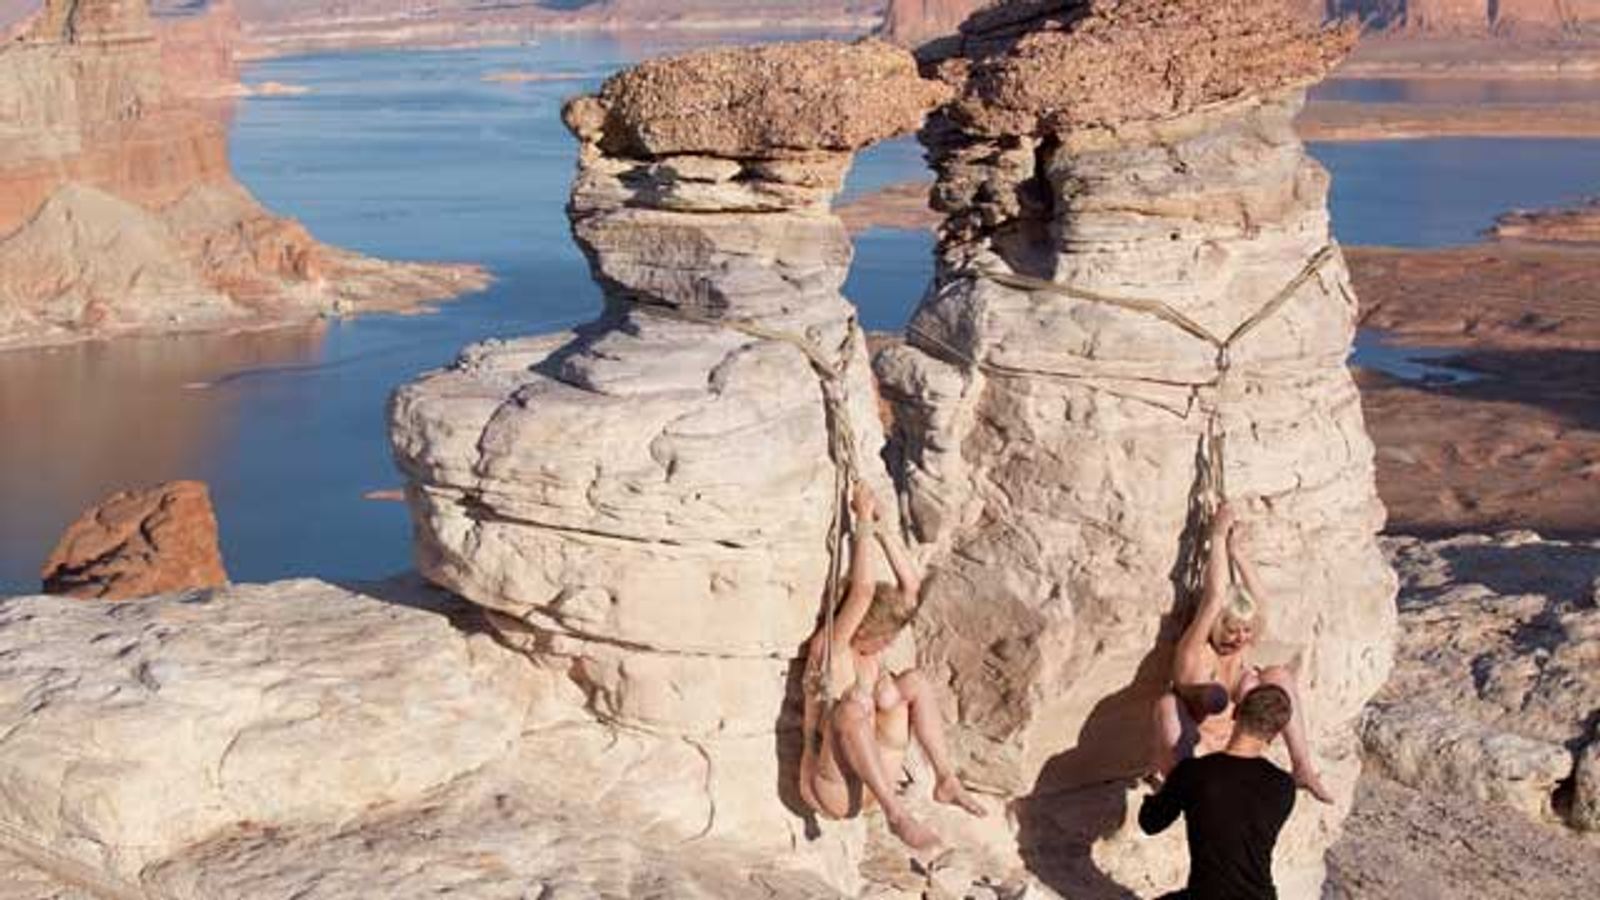 Kink Goes Big In Daring Grand Canyon Shoot